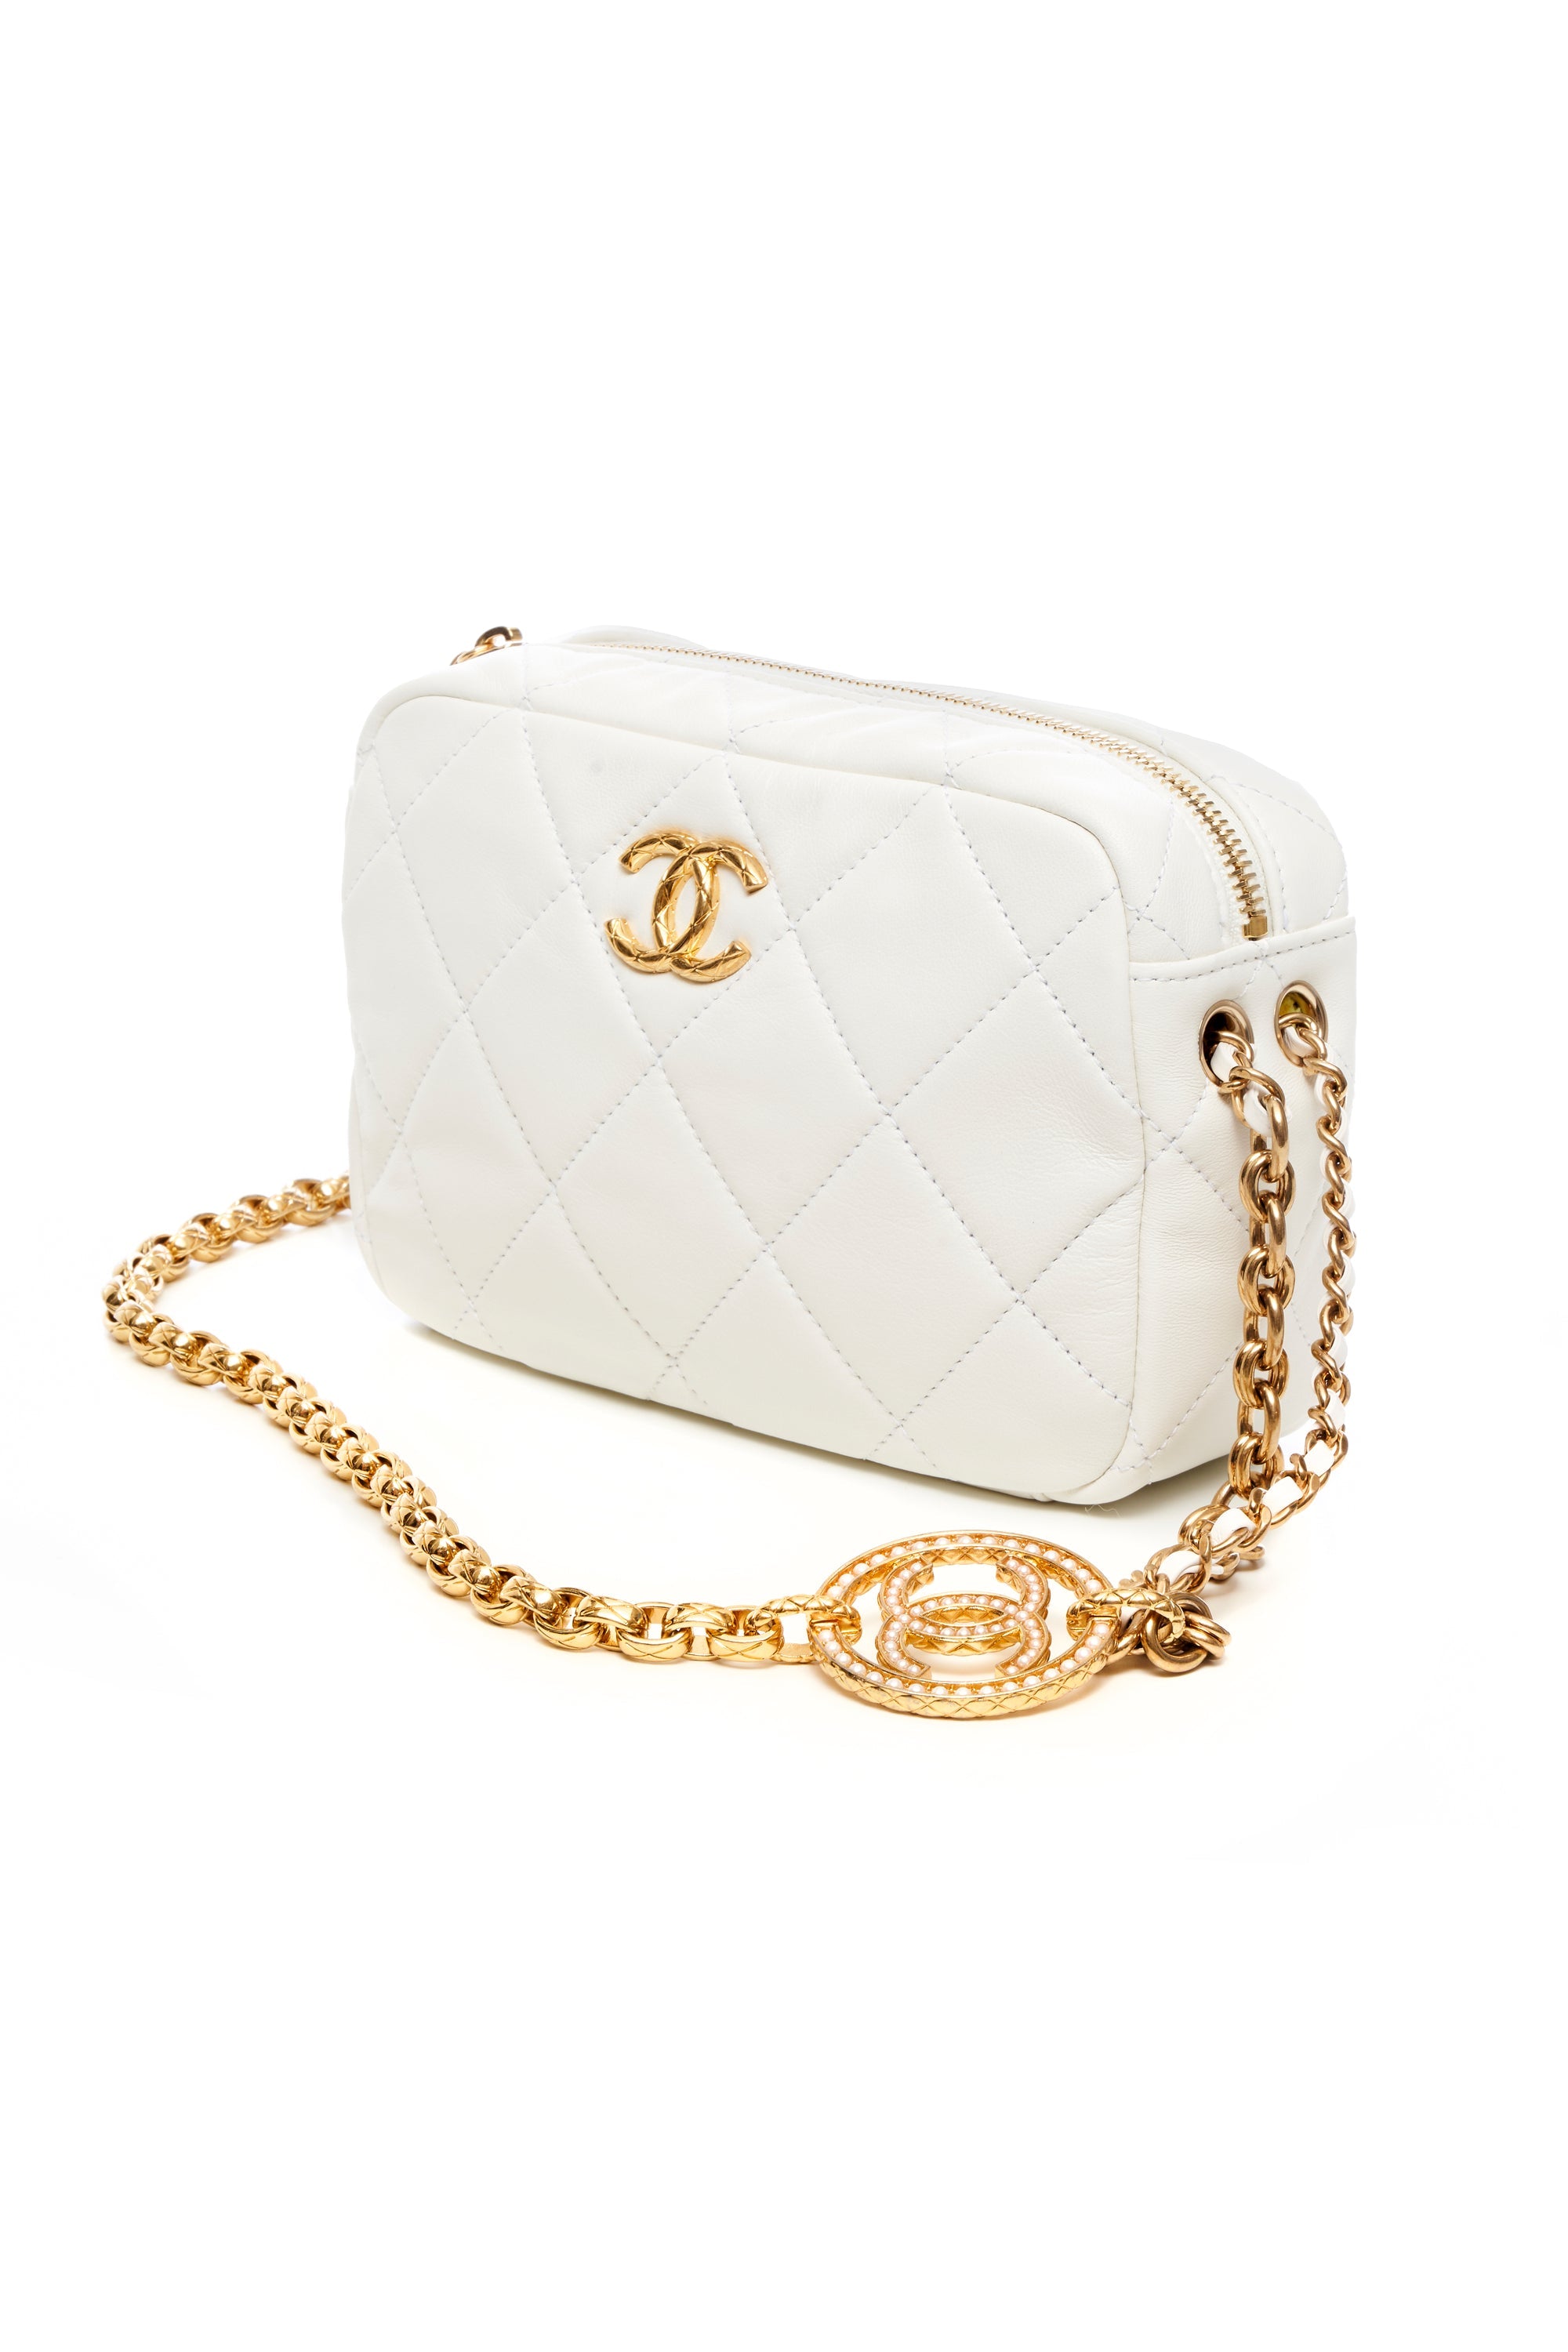 Chanel Small White Camera Bag 2022 - Foxy Couture Carmel